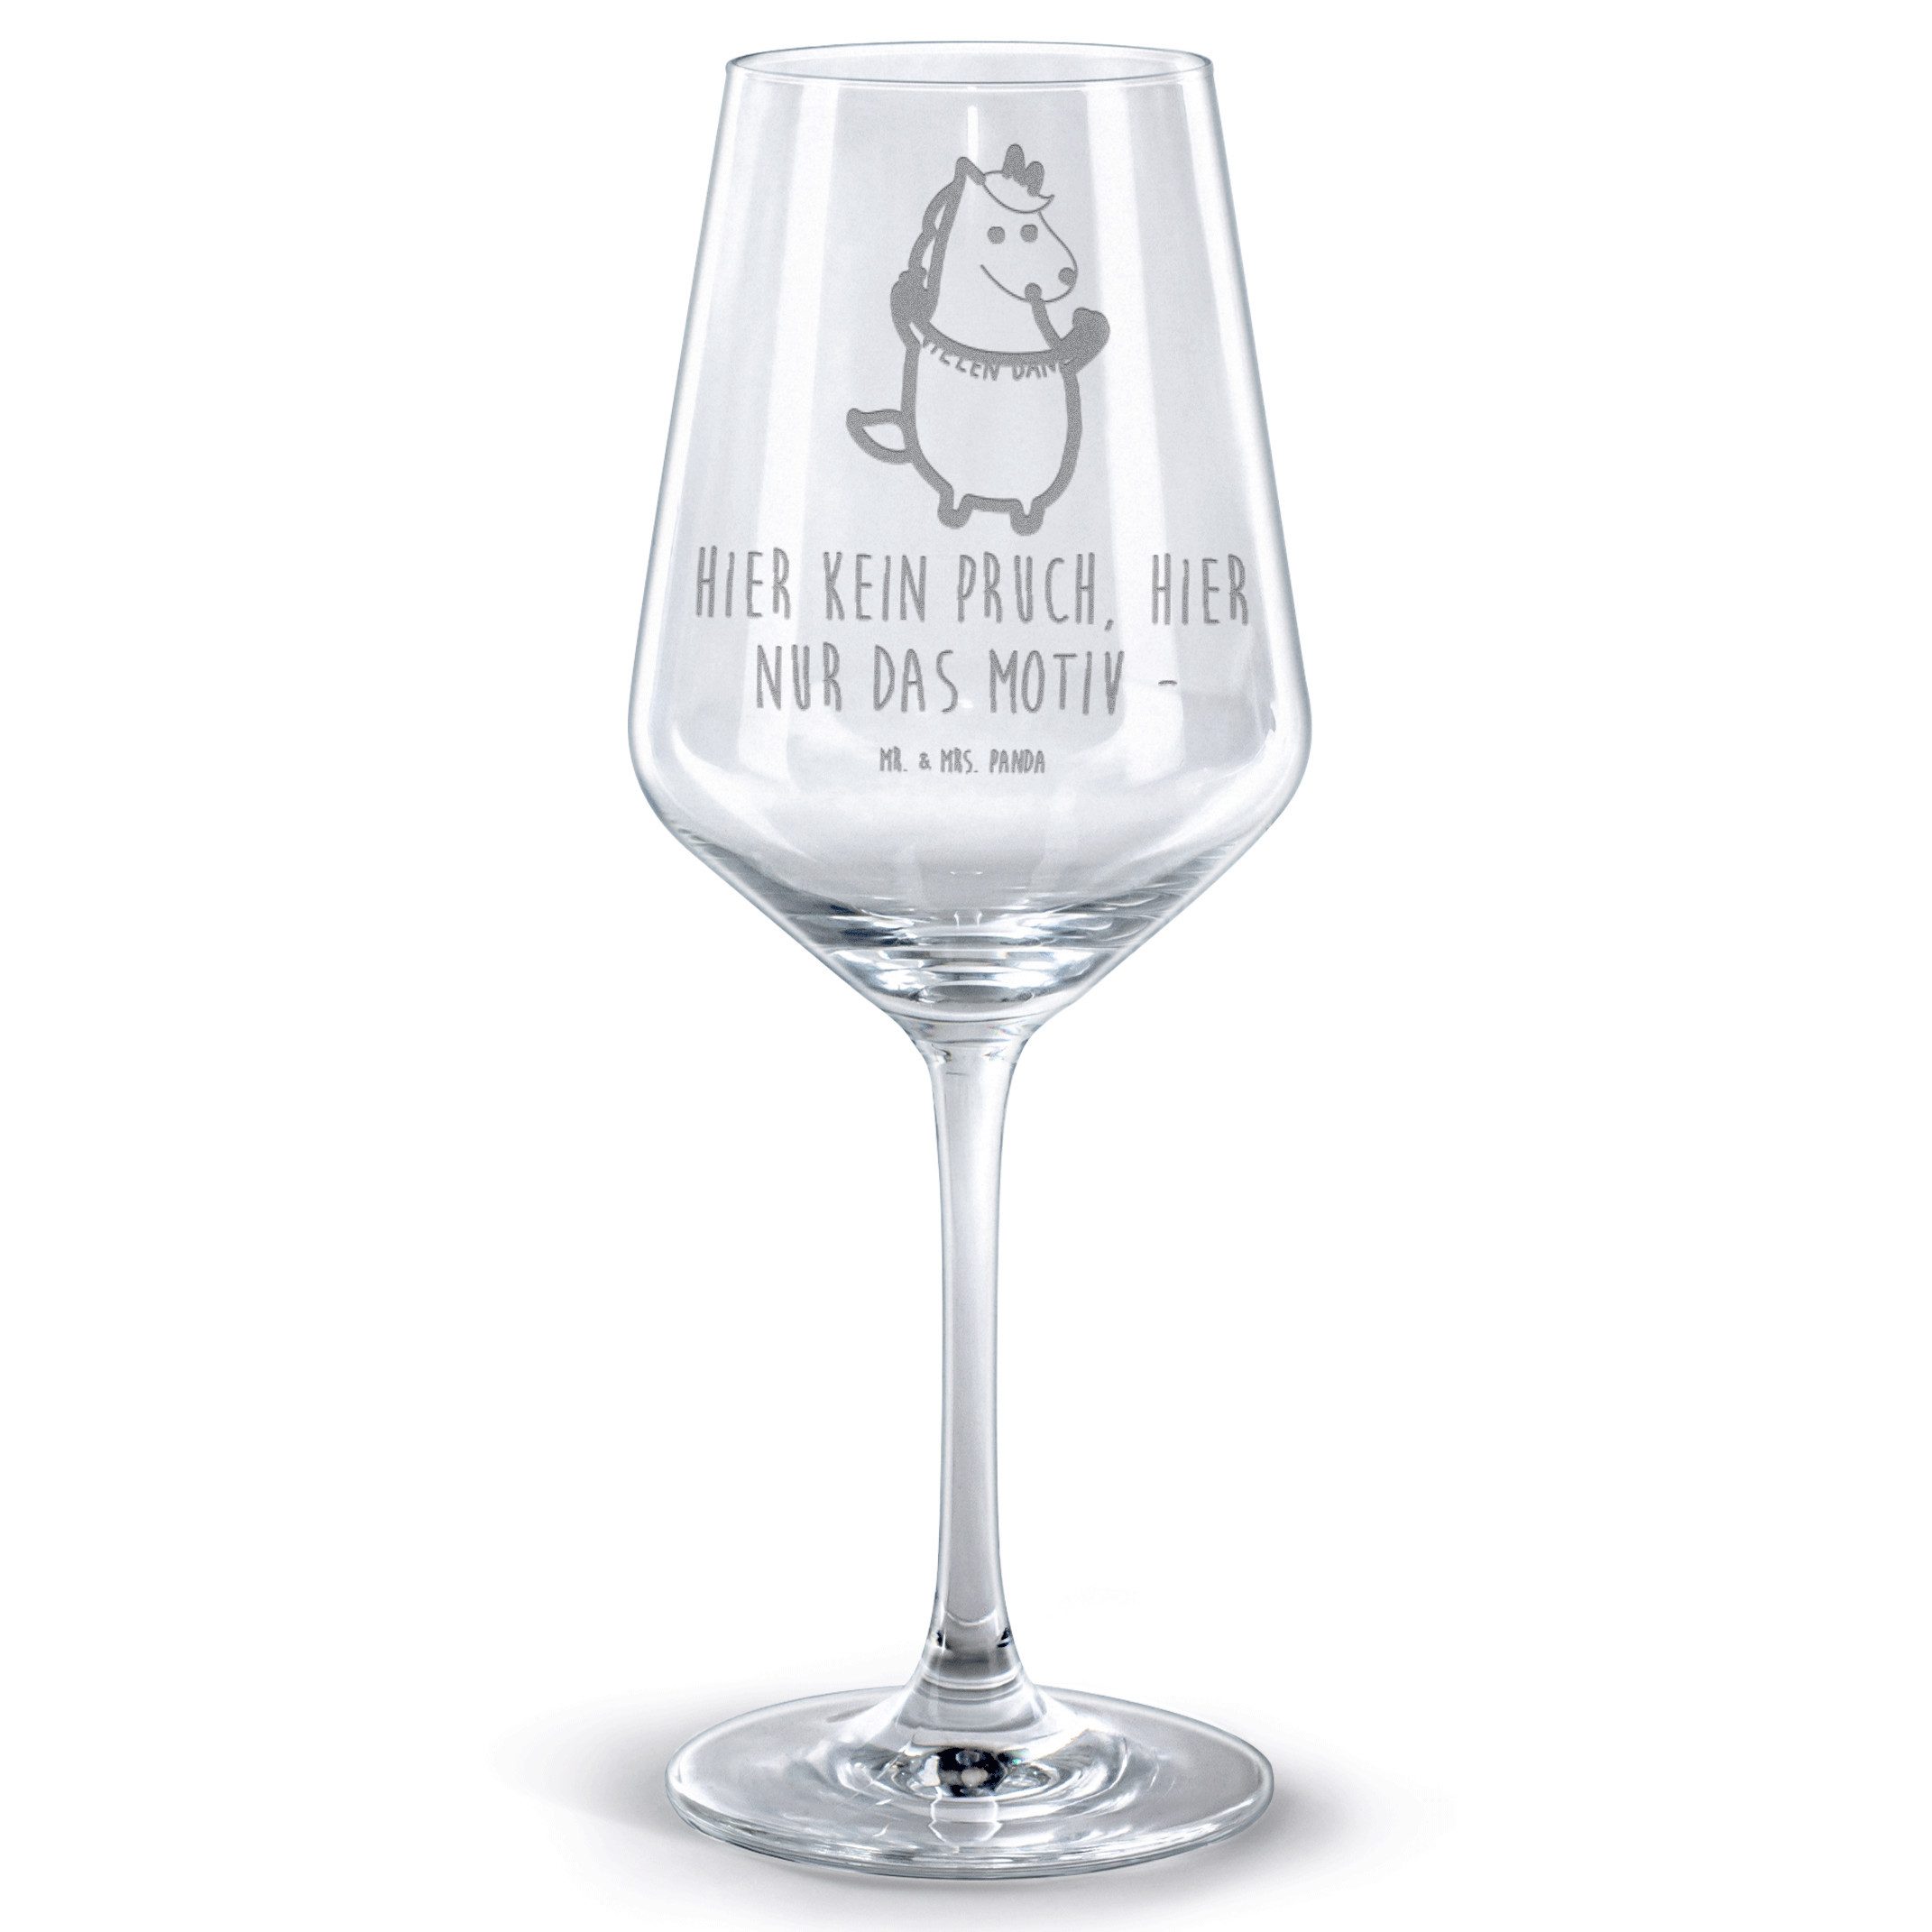 Mr. & Mrs. Panda Rotweinglas Einhorn Dankeschön - Transparent - Geschenk, Pegasus, Einhorn Deko, H, Premium Glas, Feine Lasergravur